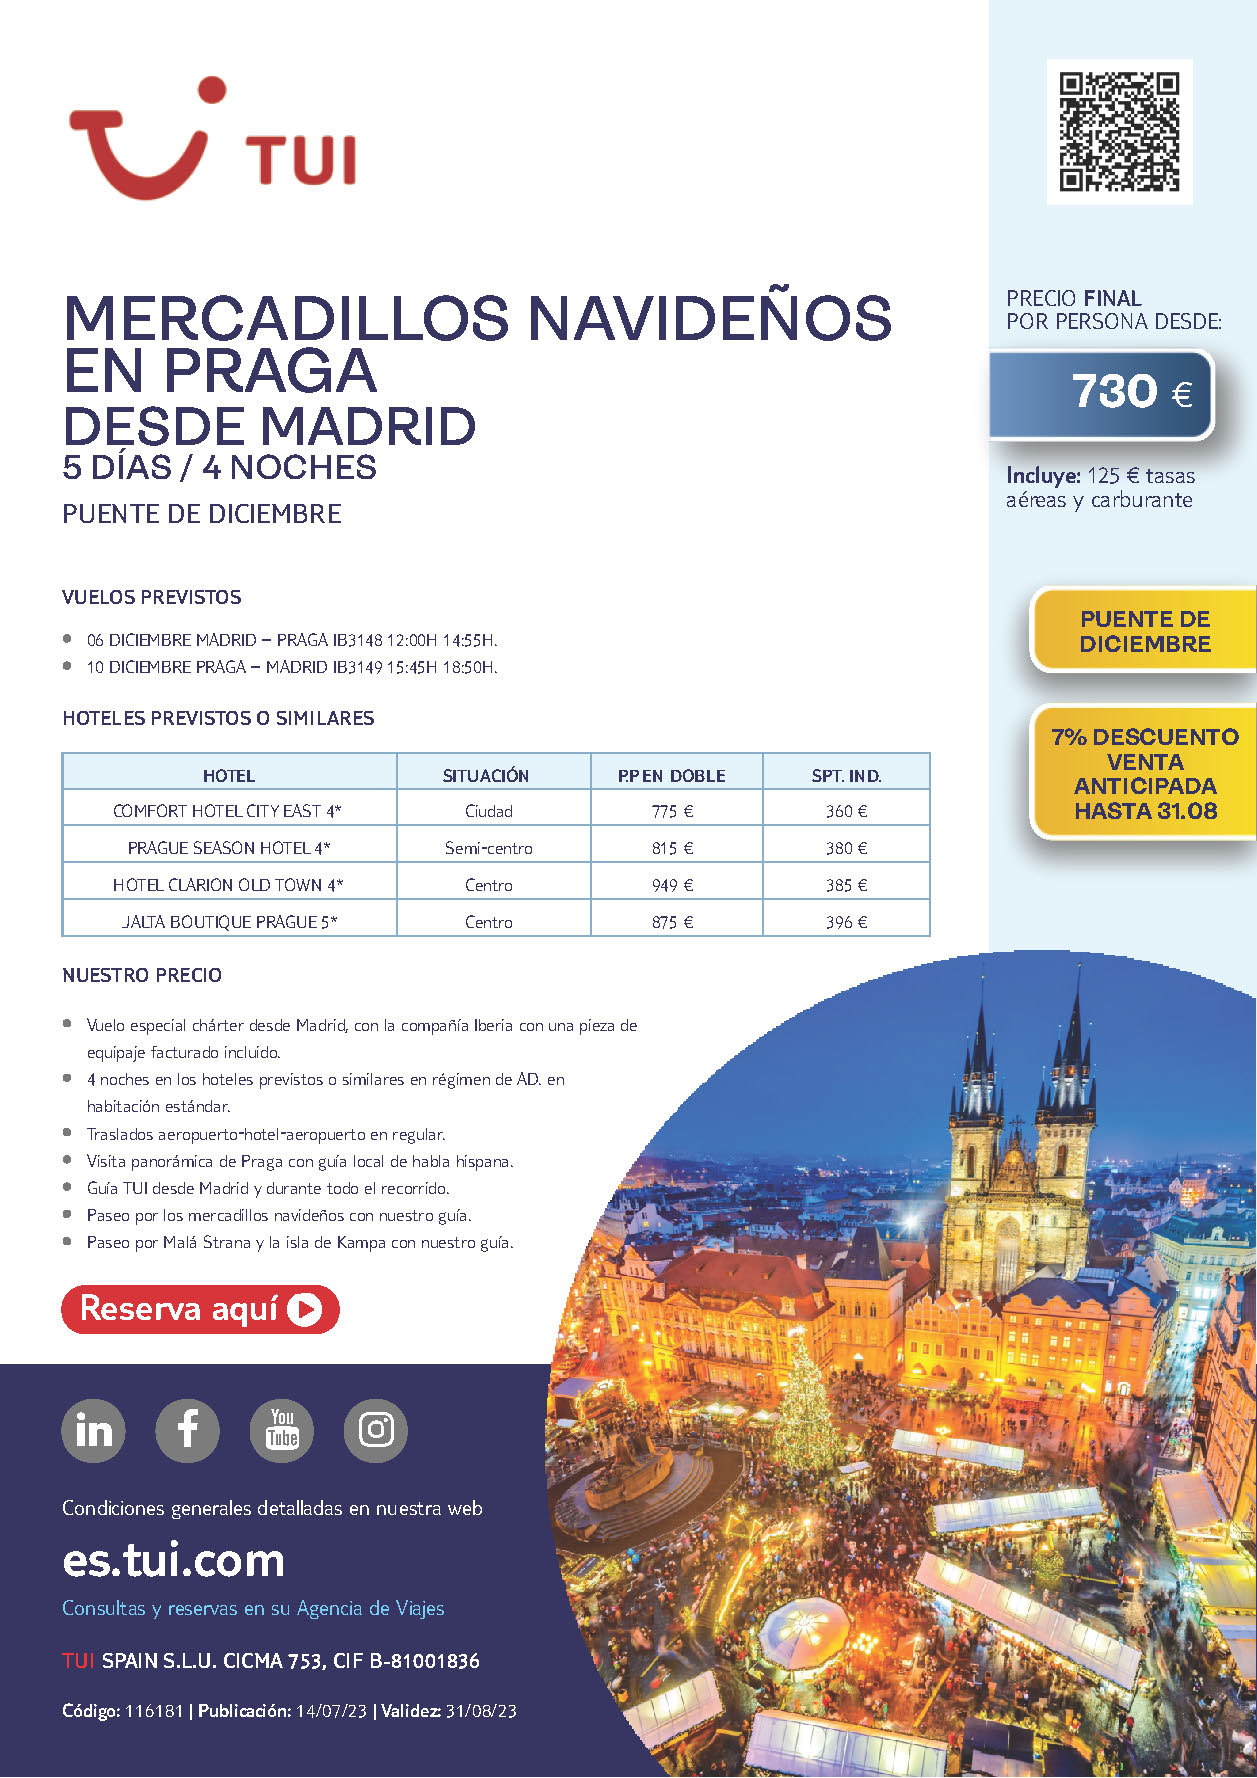 Oferta TUI Puente de Diciembre 2023 Mercadillos Navideños en Praga 5 dias salida 6 de diciembre vuelo regular desde Madrid